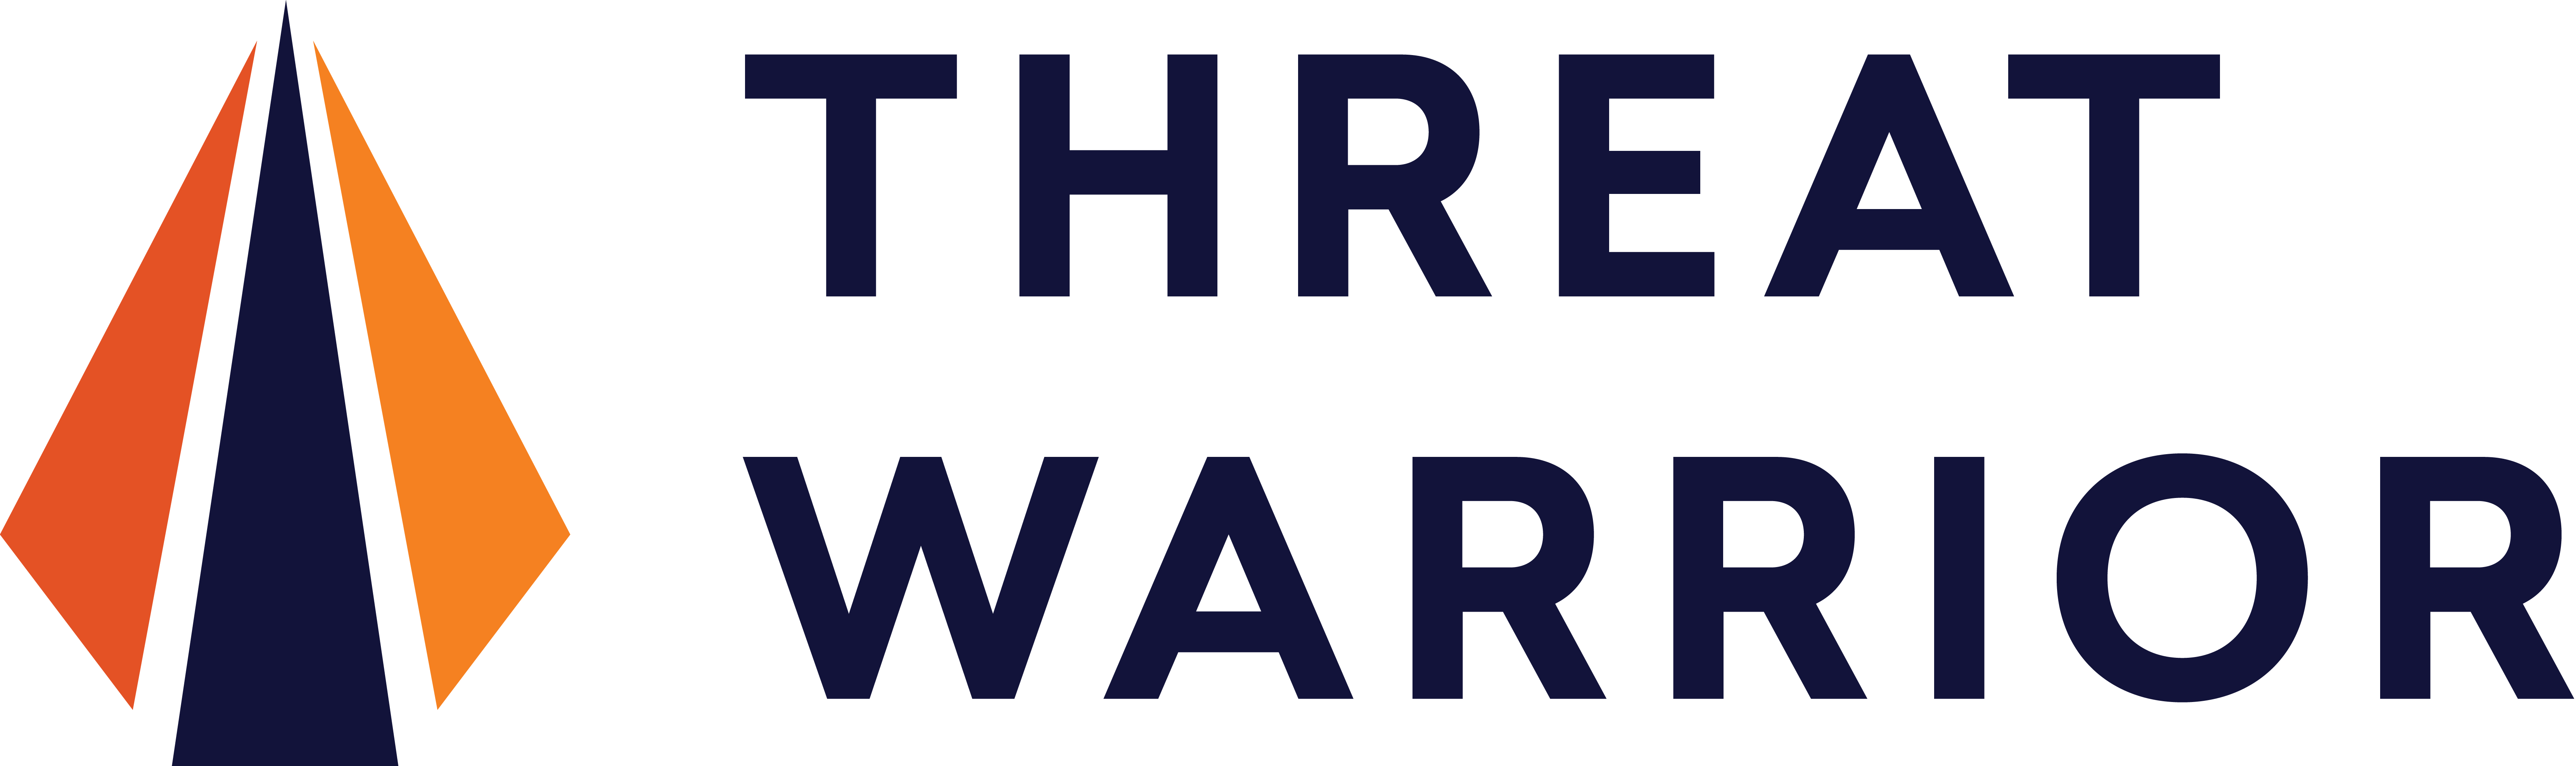 Threat Warrior logo